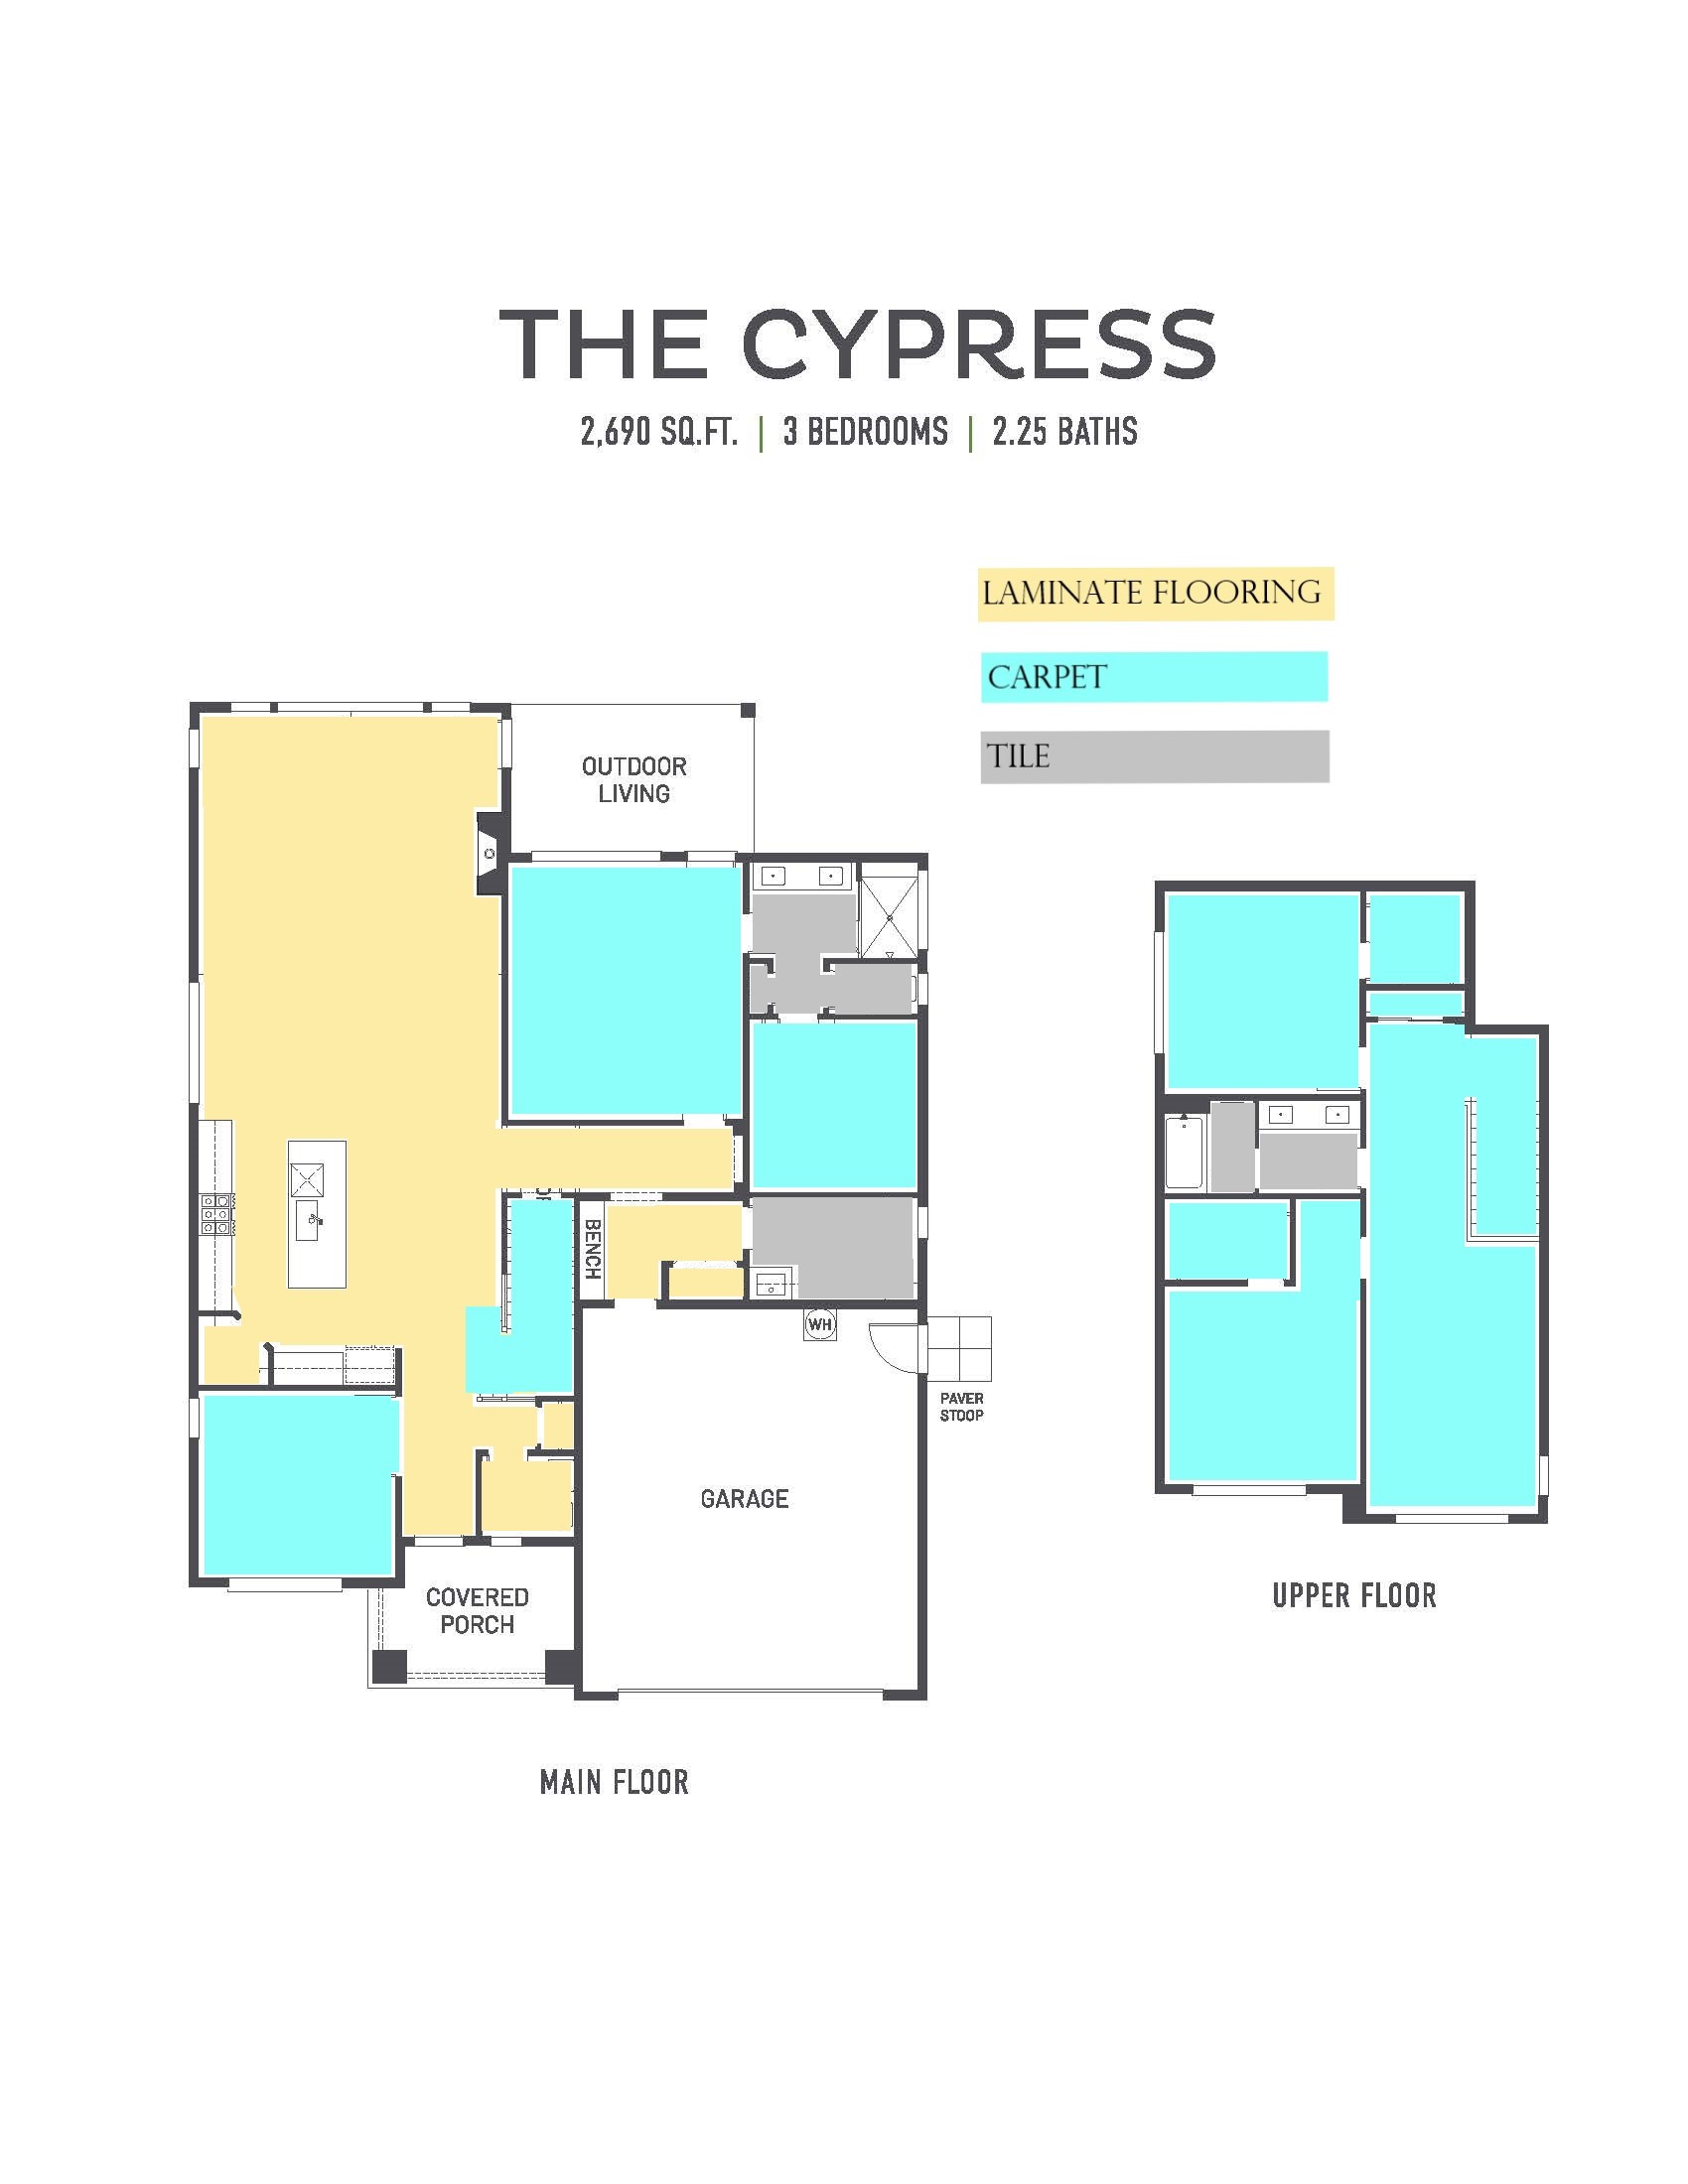 Cypress Flooring Breaks